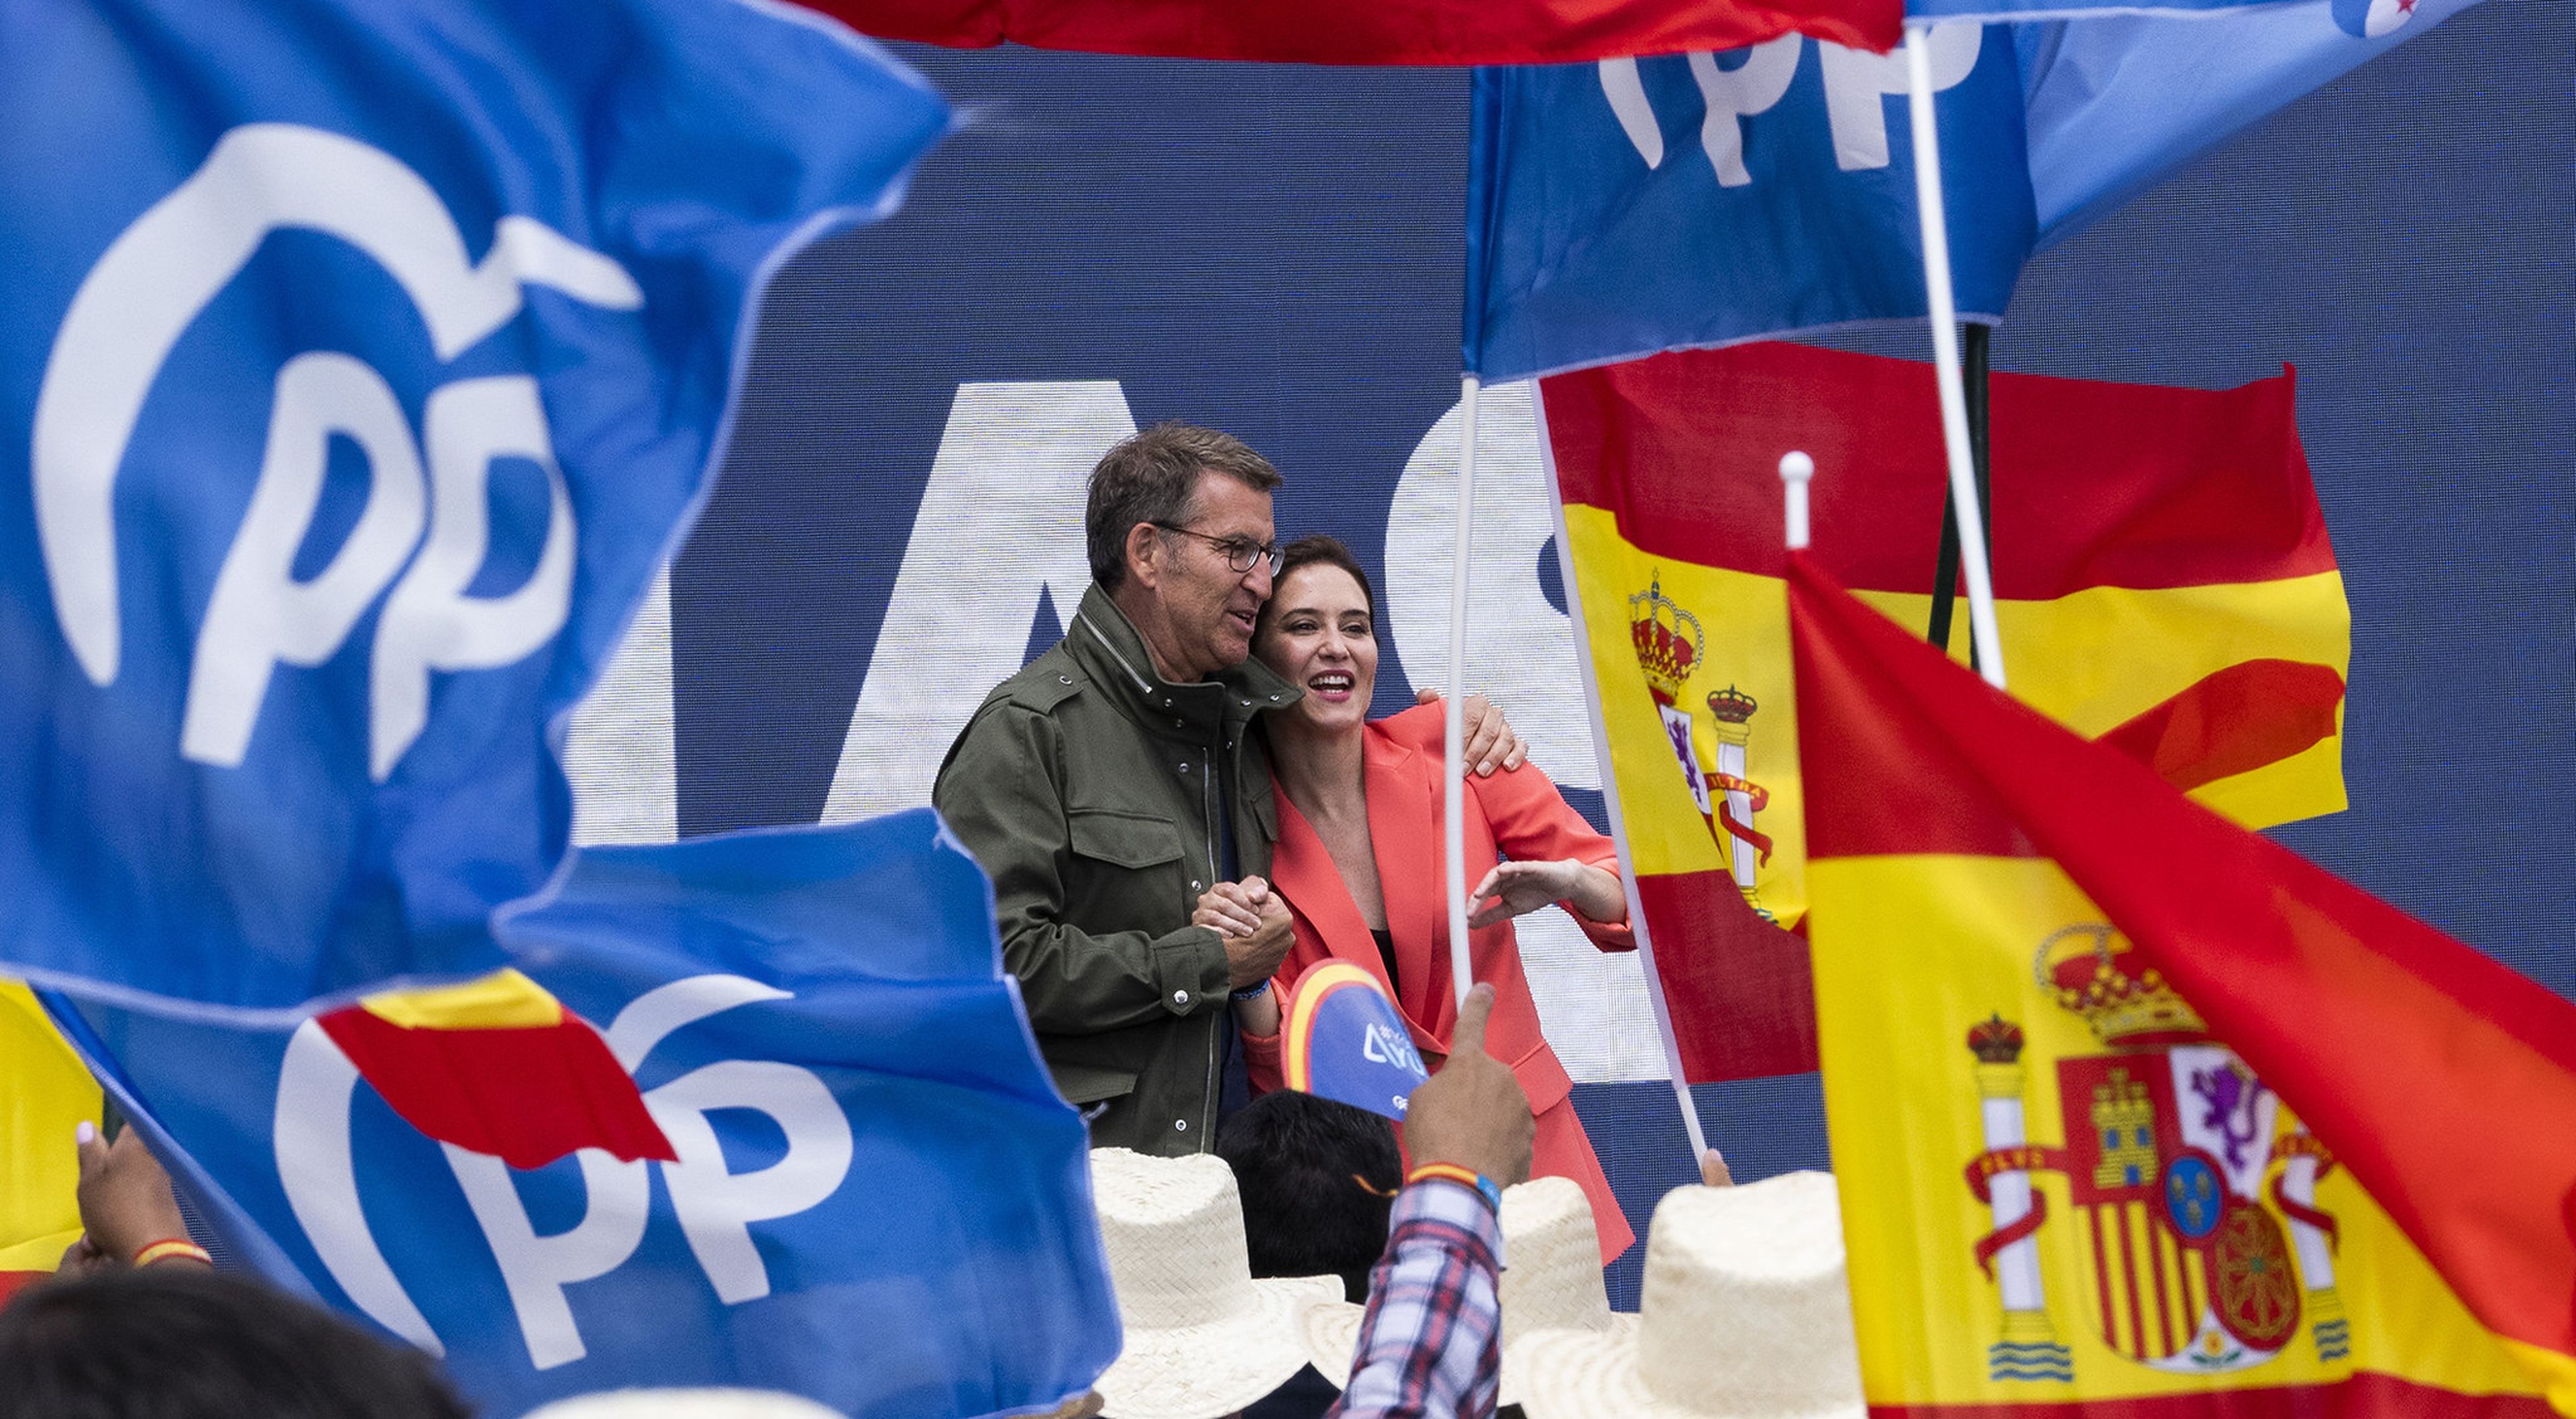 Alberto Núñez Feijóo líder del PP nacional e Isabel Díaz Ayuso presidenta de la Comunidad de Madrid y candidata a la asamblea.